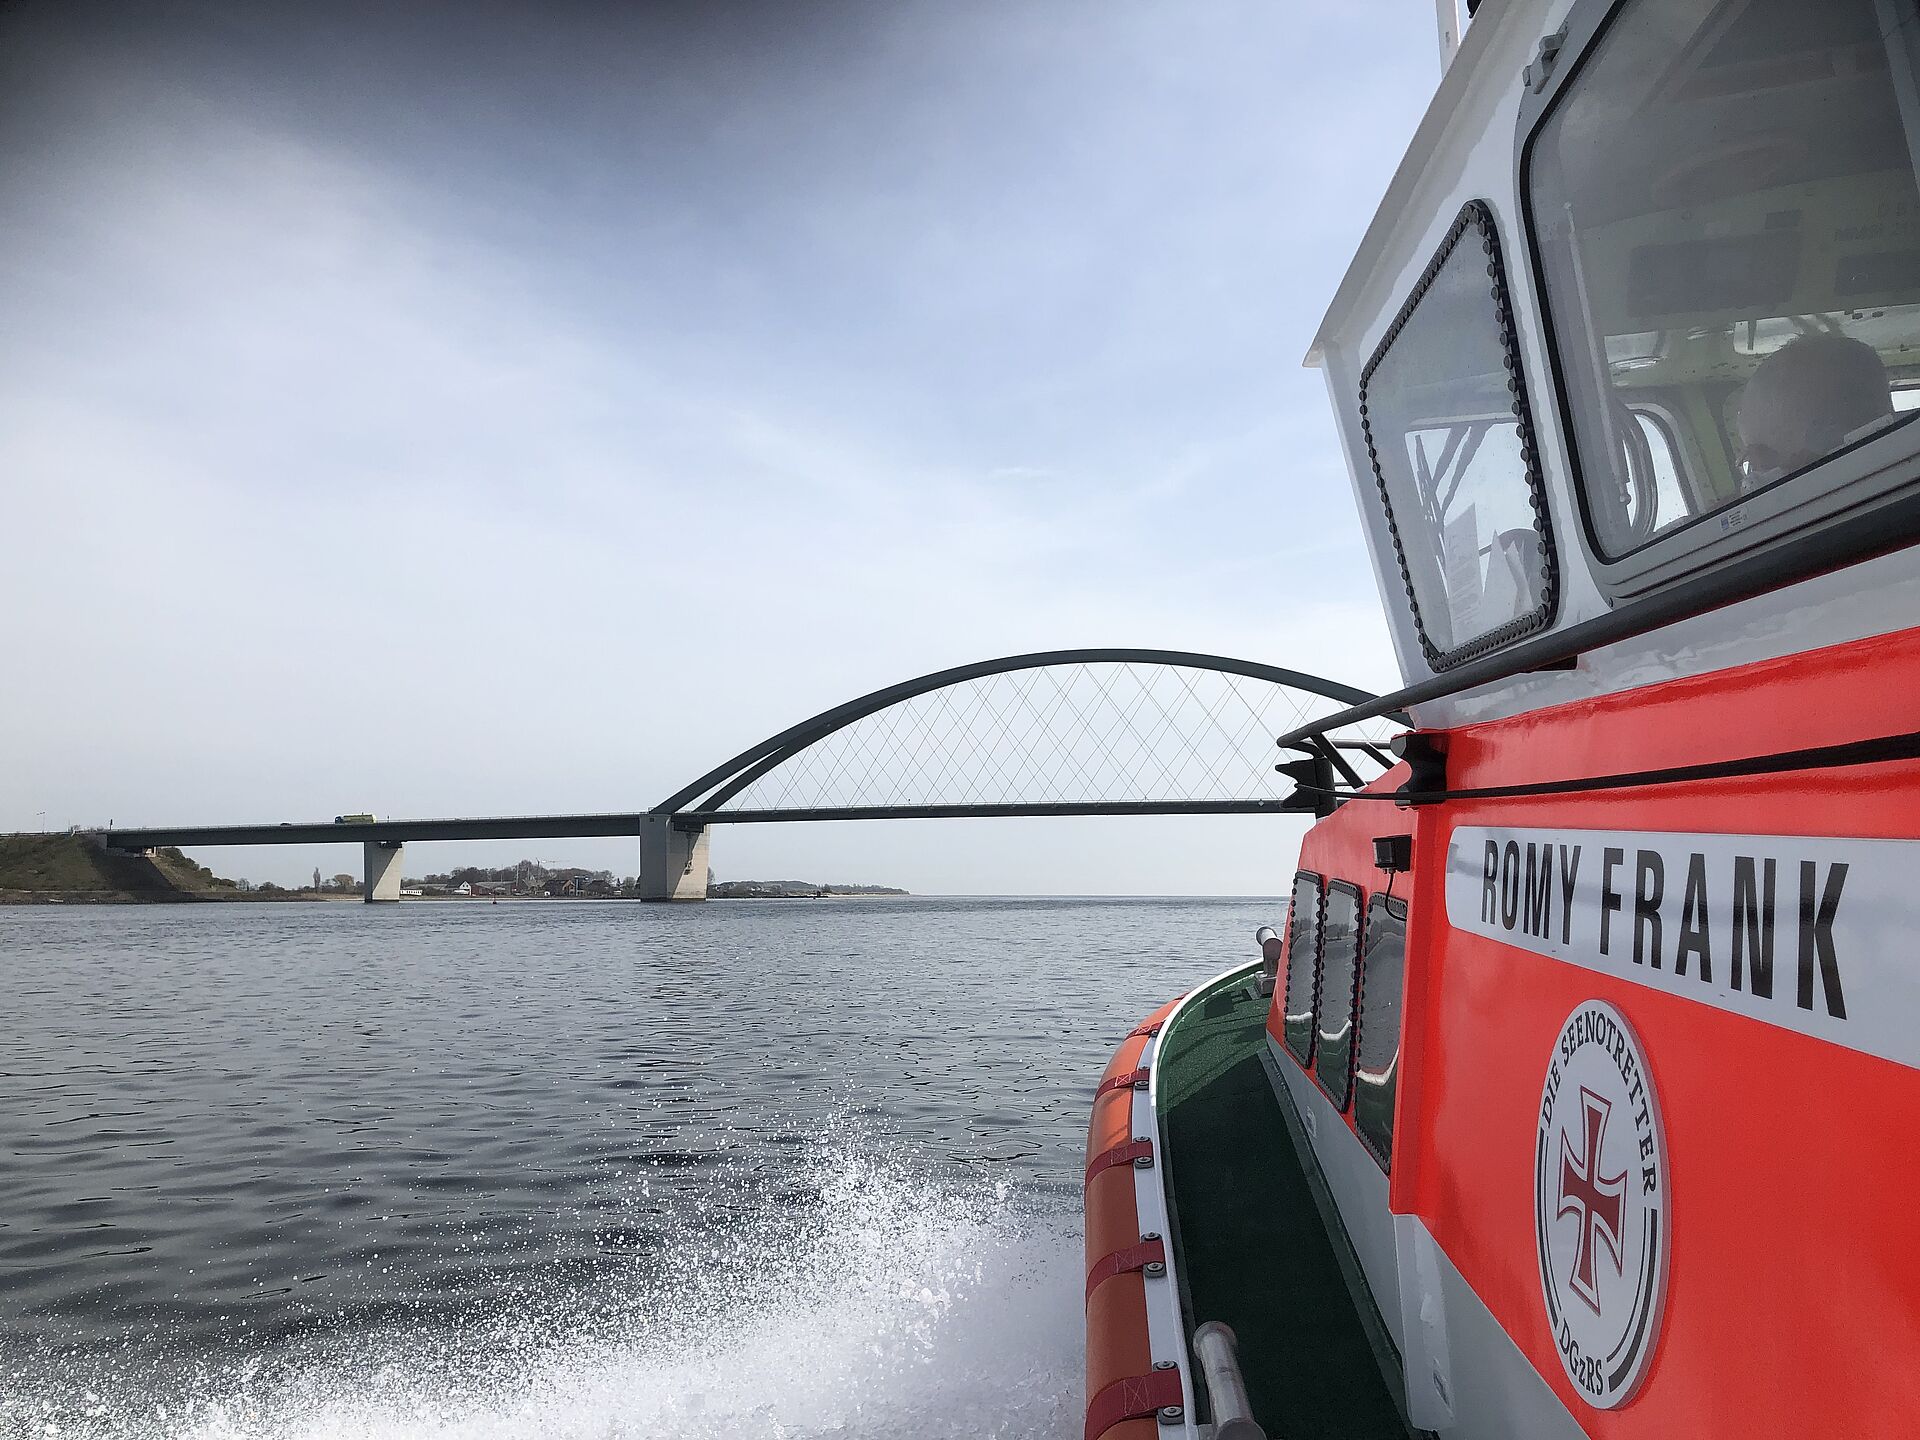 Blick vorbei am Aufbau eines Seenotrettungsbootes in Richtung einer großen Brücke über die Ostsee